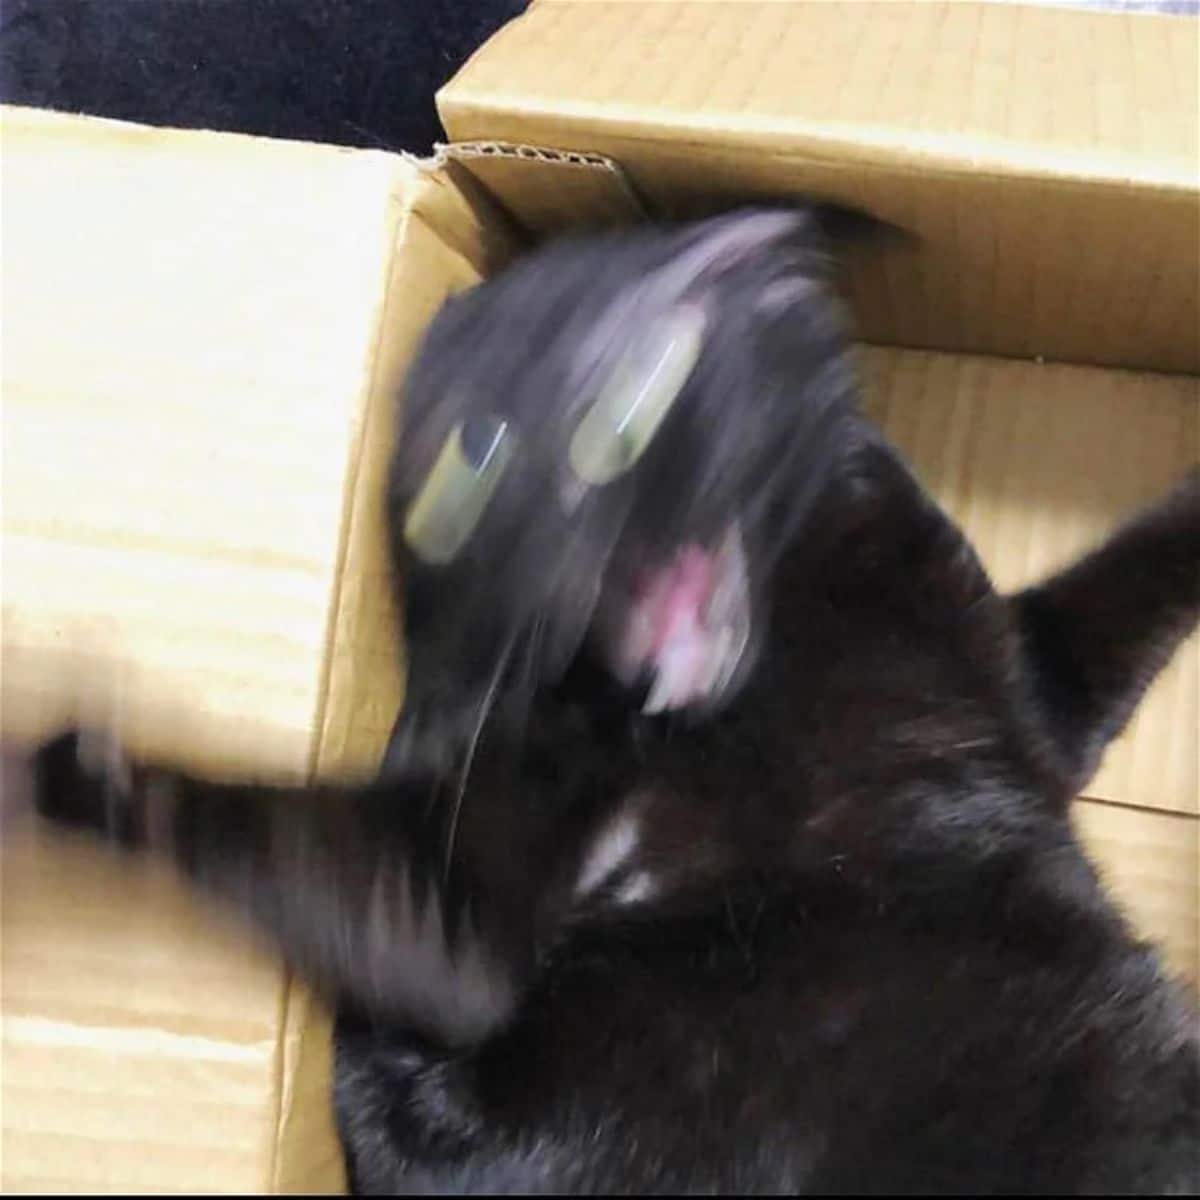 blurry photo of black cat in a brown cardboard box